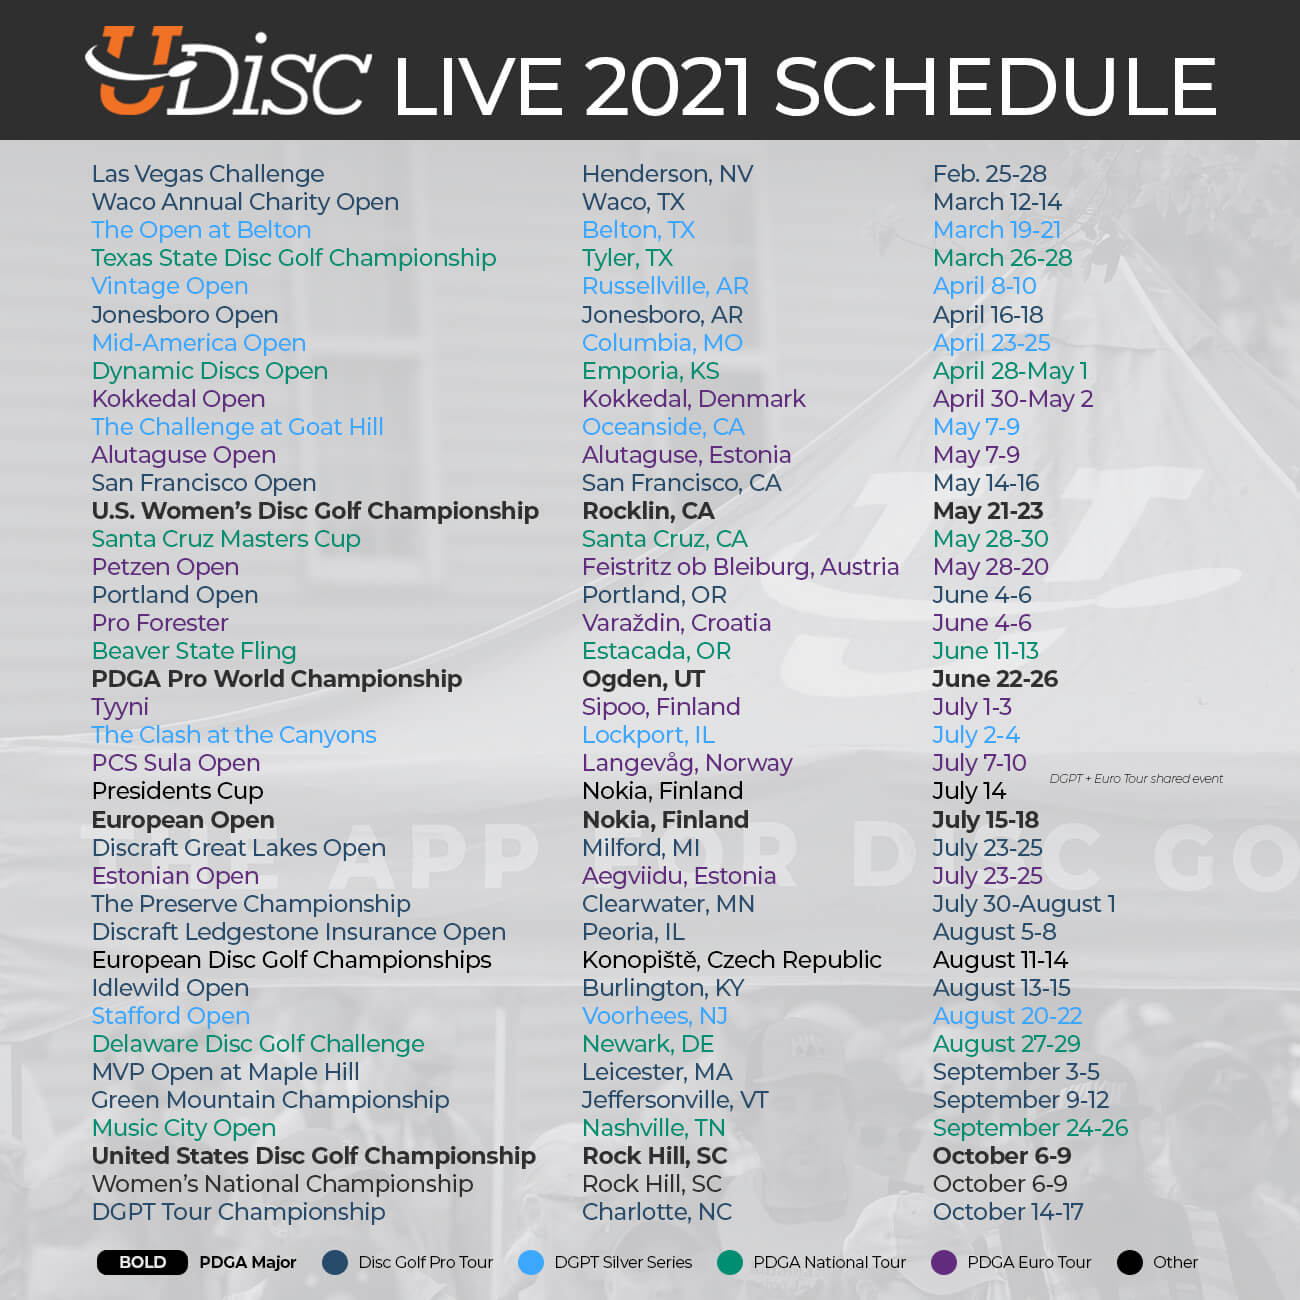 The 2021 UDisc Live Schedule